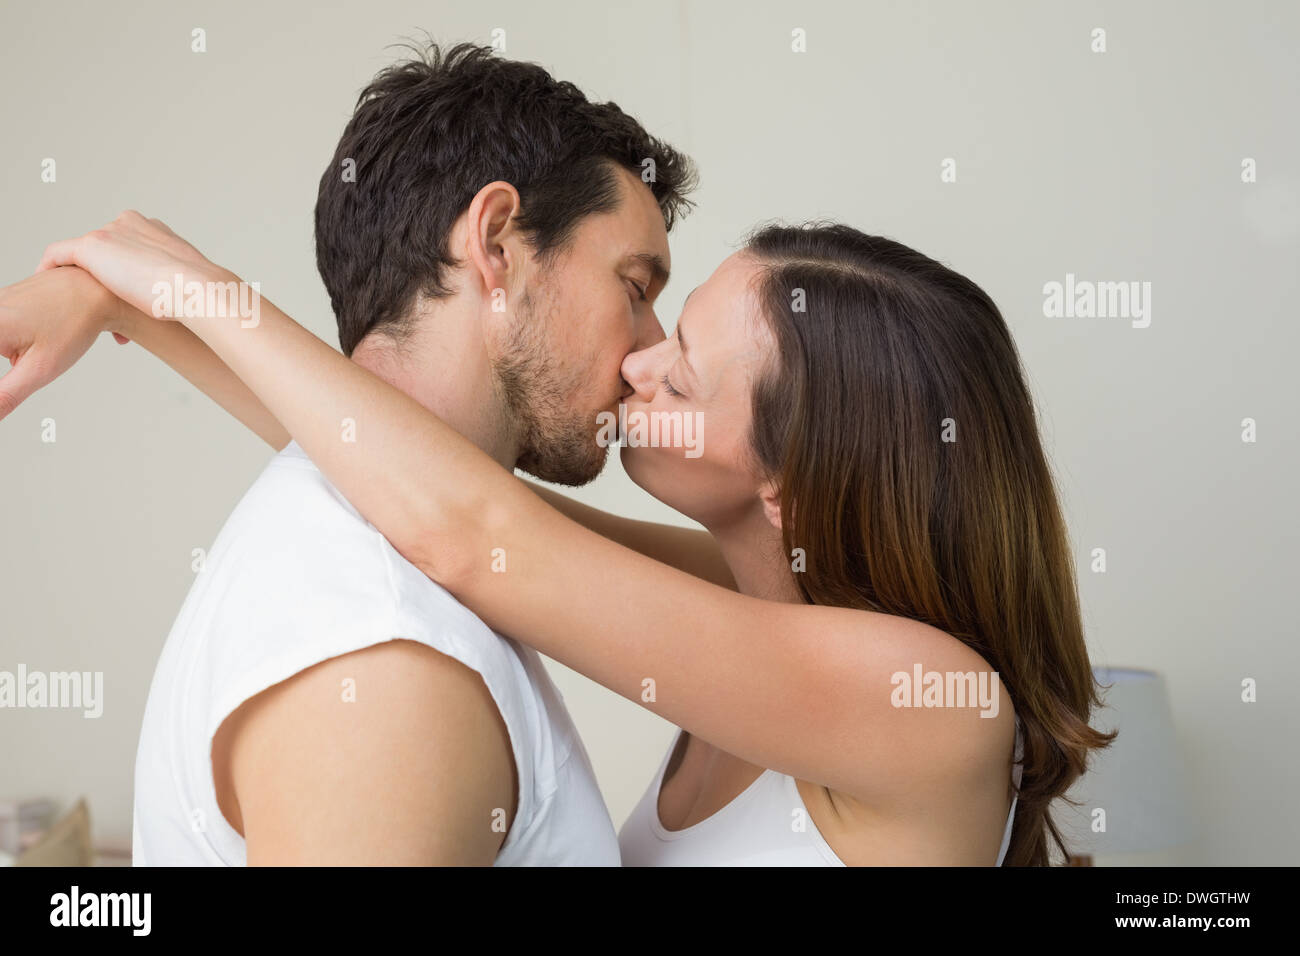 Vue latérale d'un couple d'amoureux s'embrasser Banque D'Images